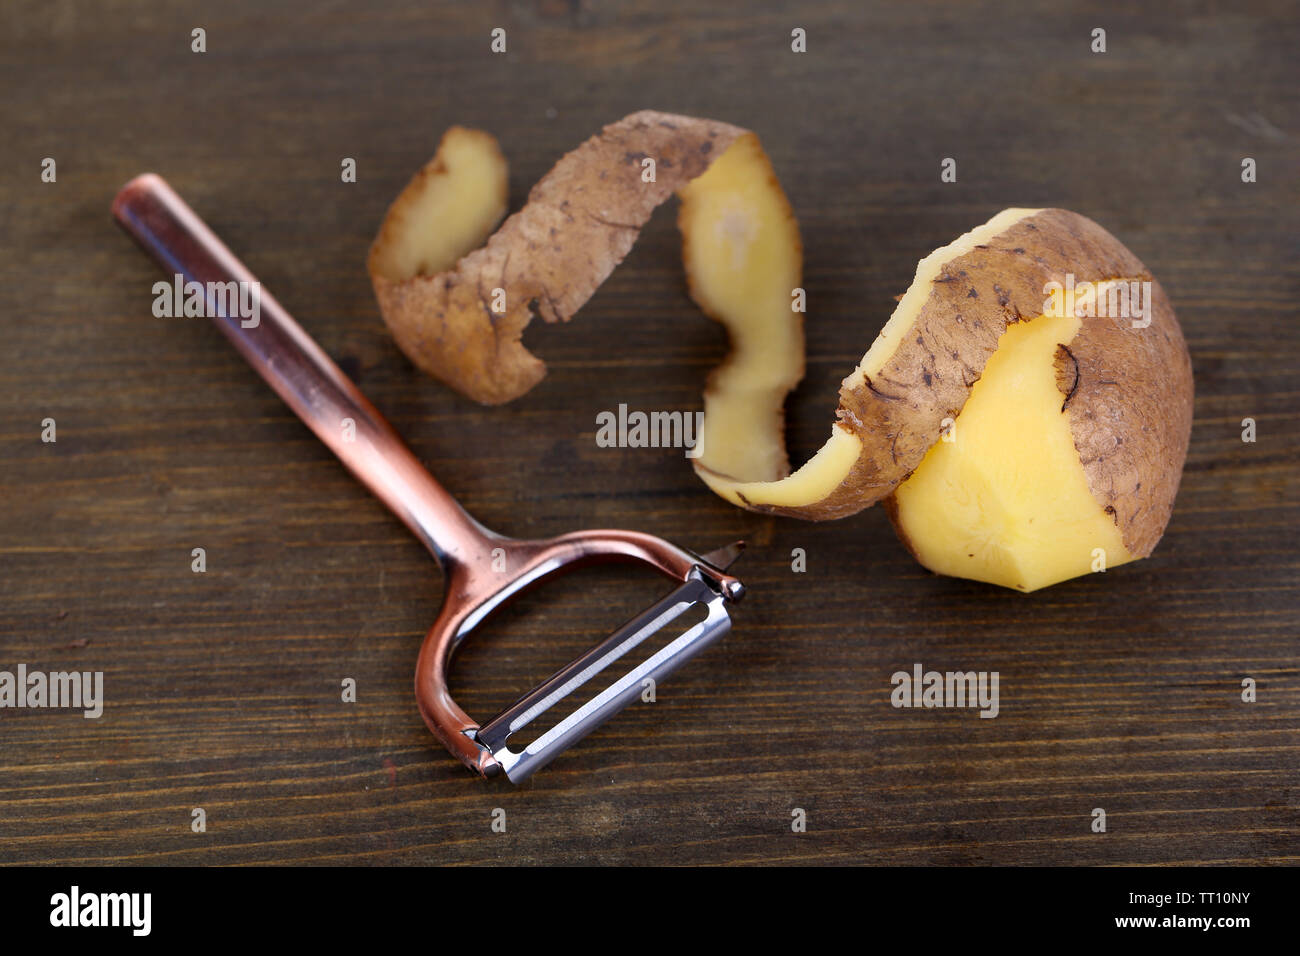 https://c8.alamy.com/comp/TT10NY/peeler-and-fresh-potato-on-wooden-background-TT10NY.jpg